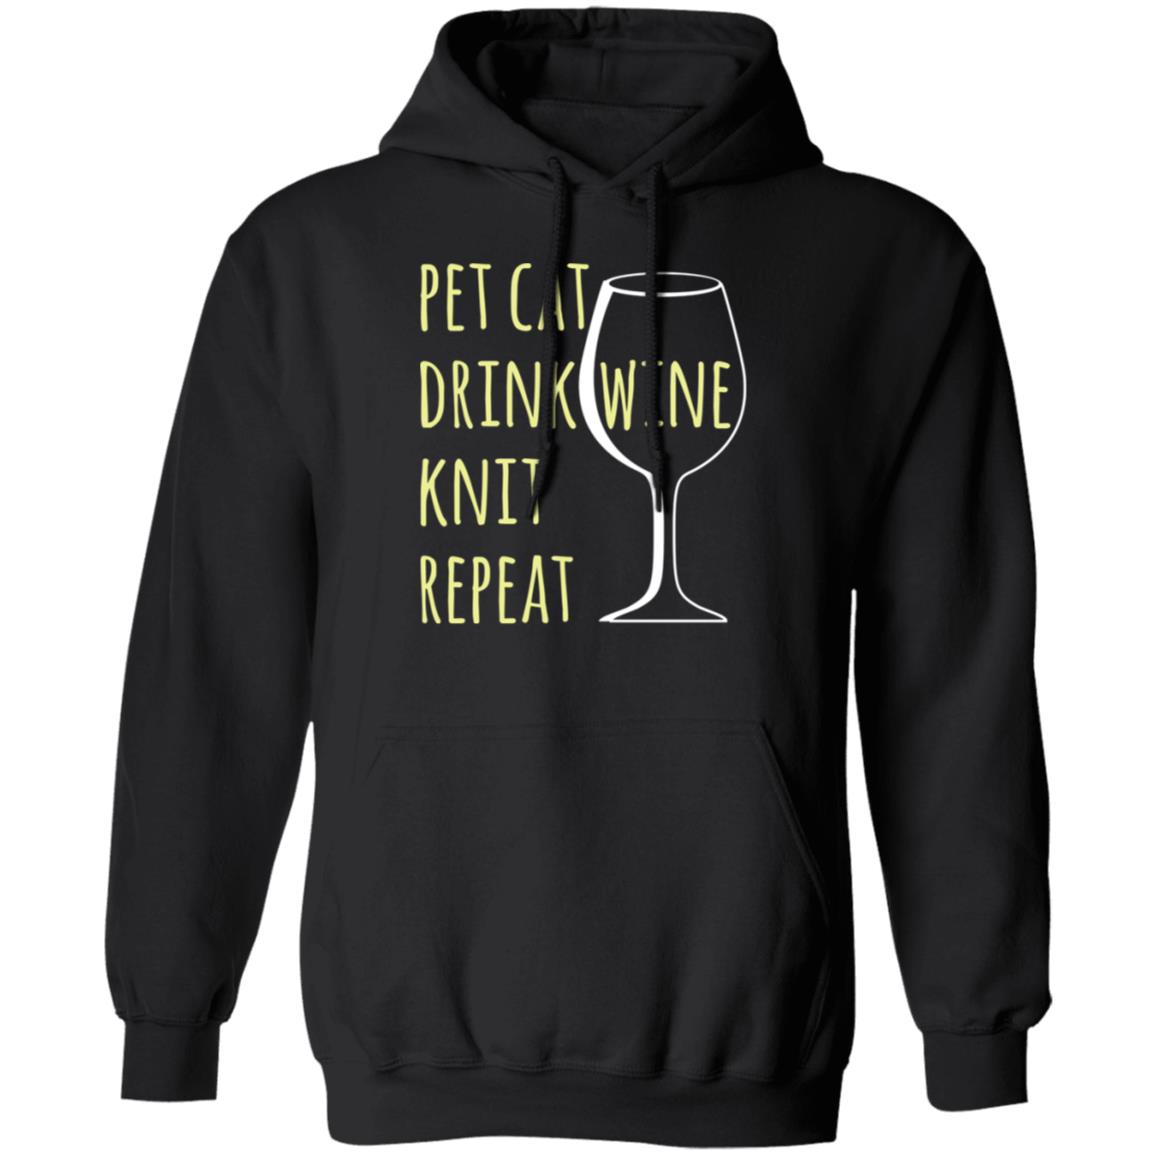 Pet Cat-Drink Wine-Knit Hoodie